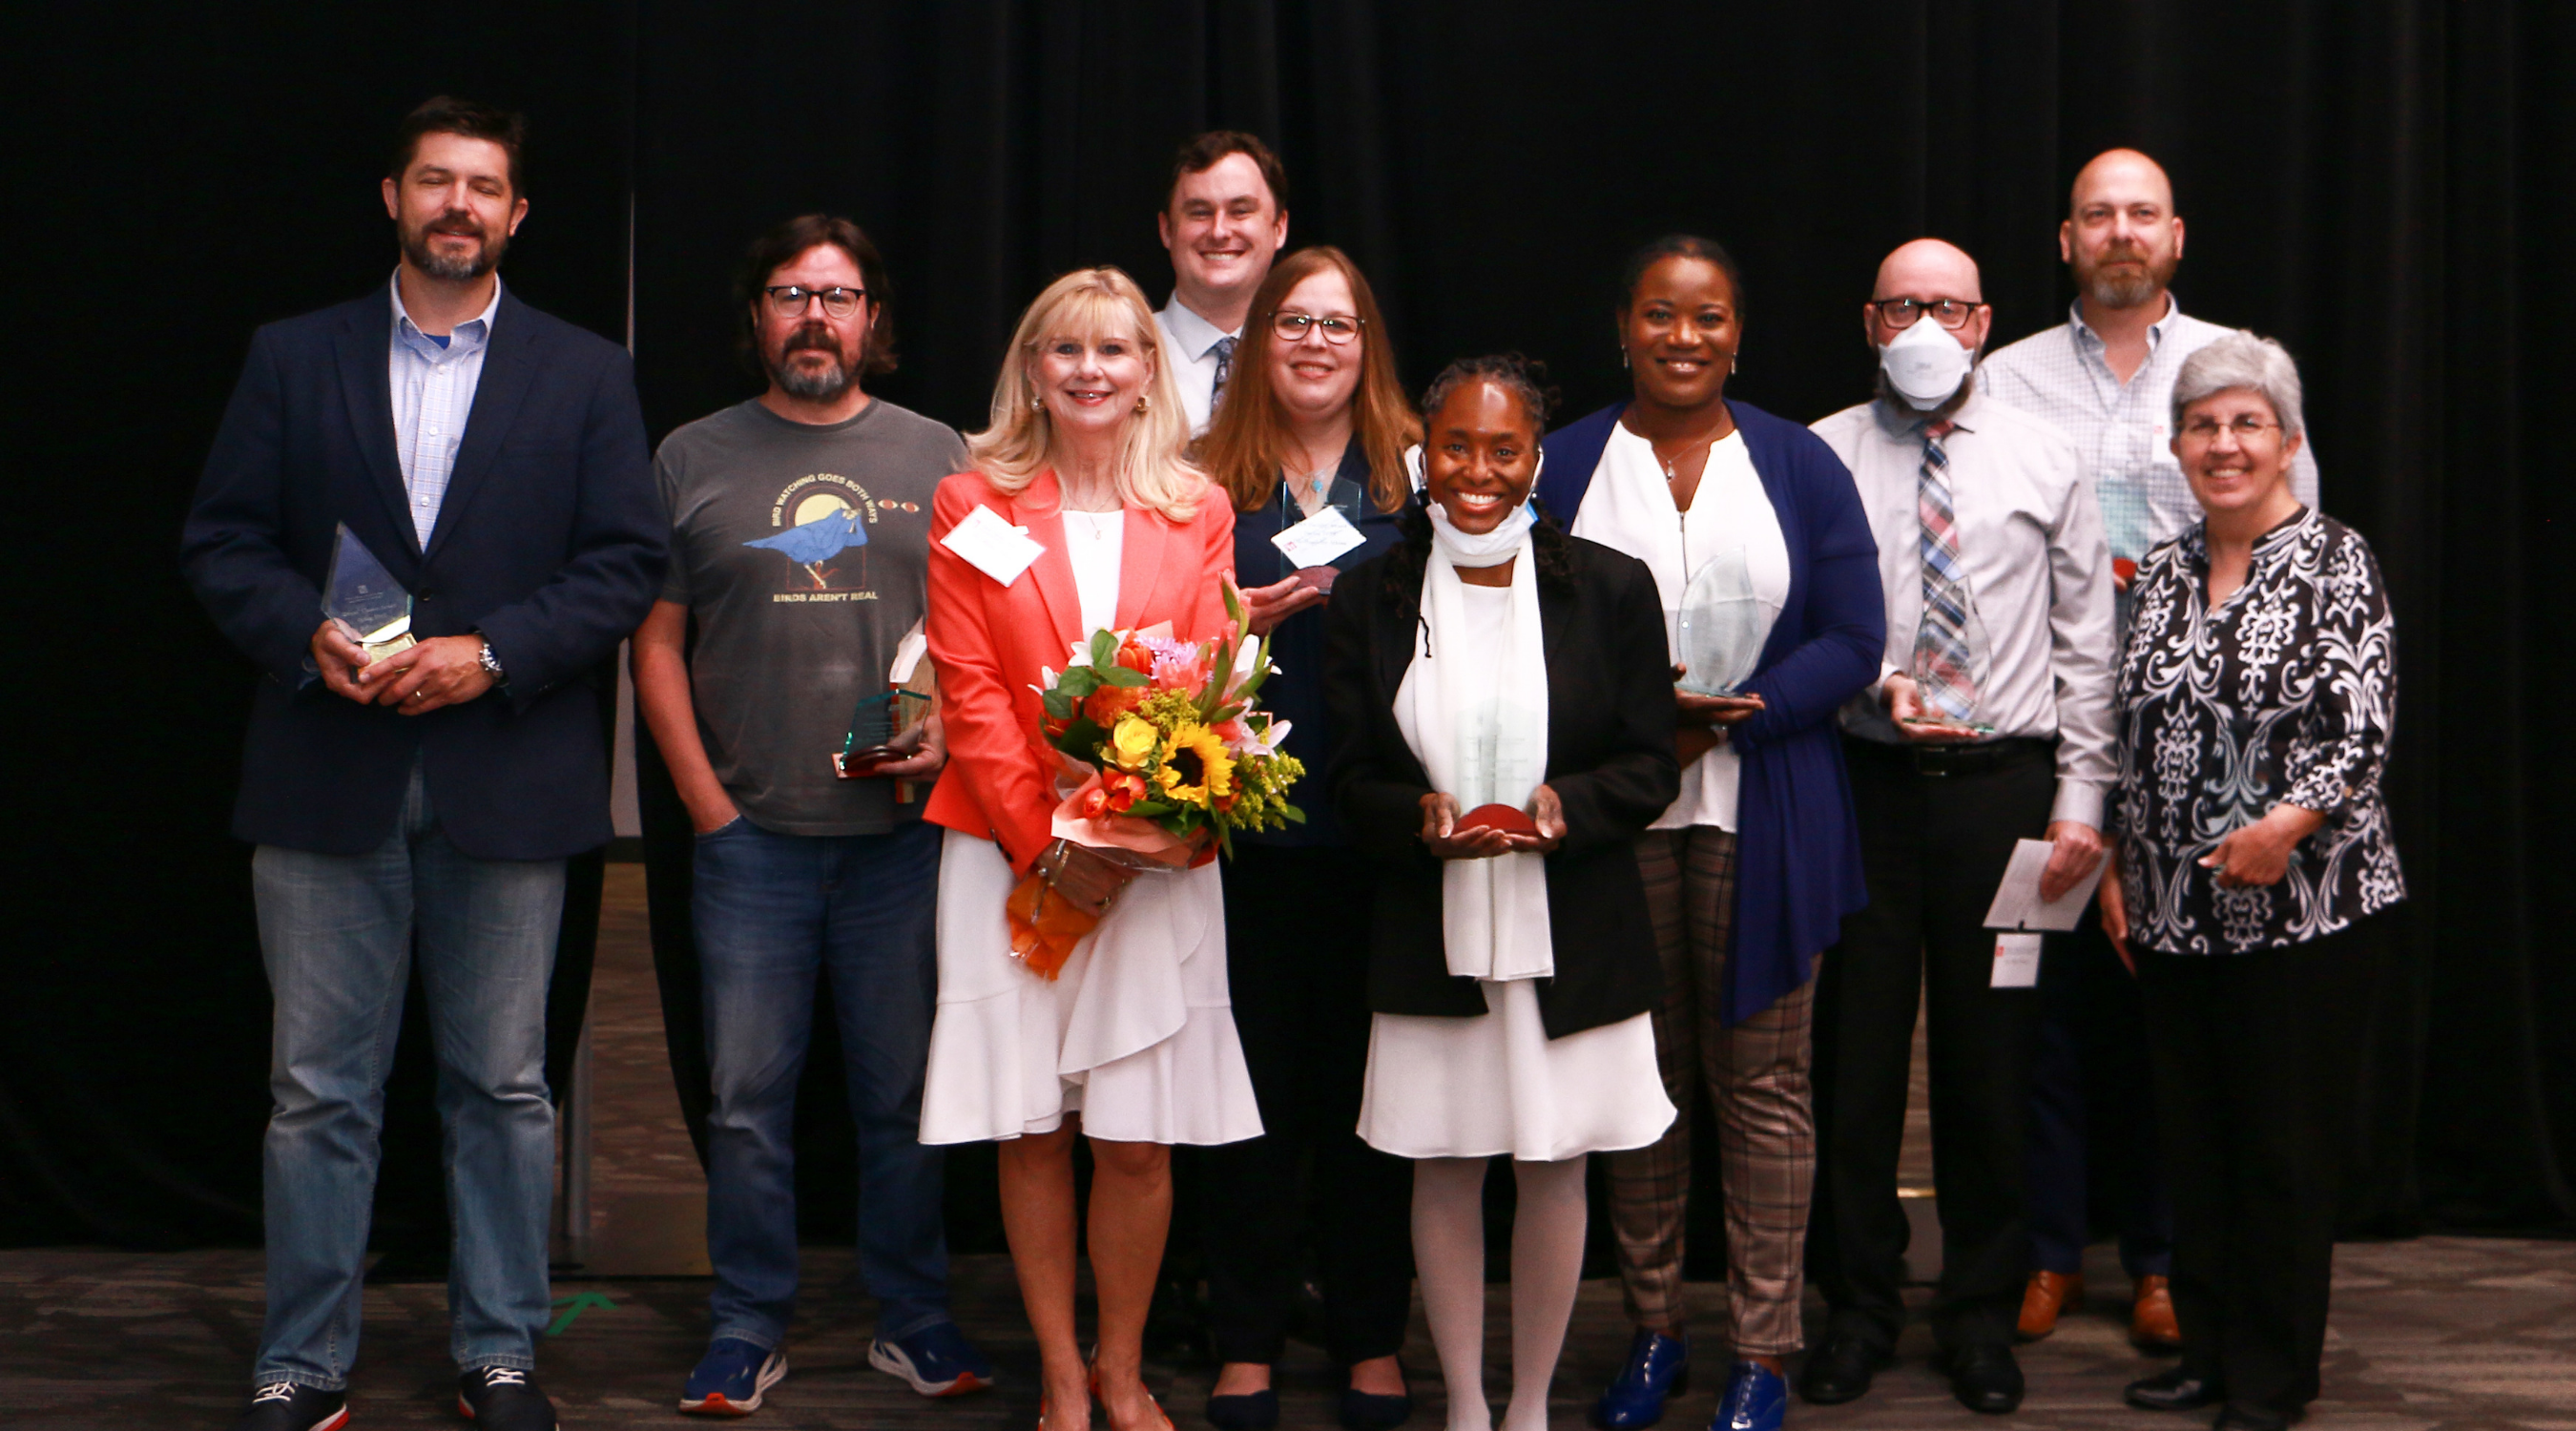 Faculty Award Recipients